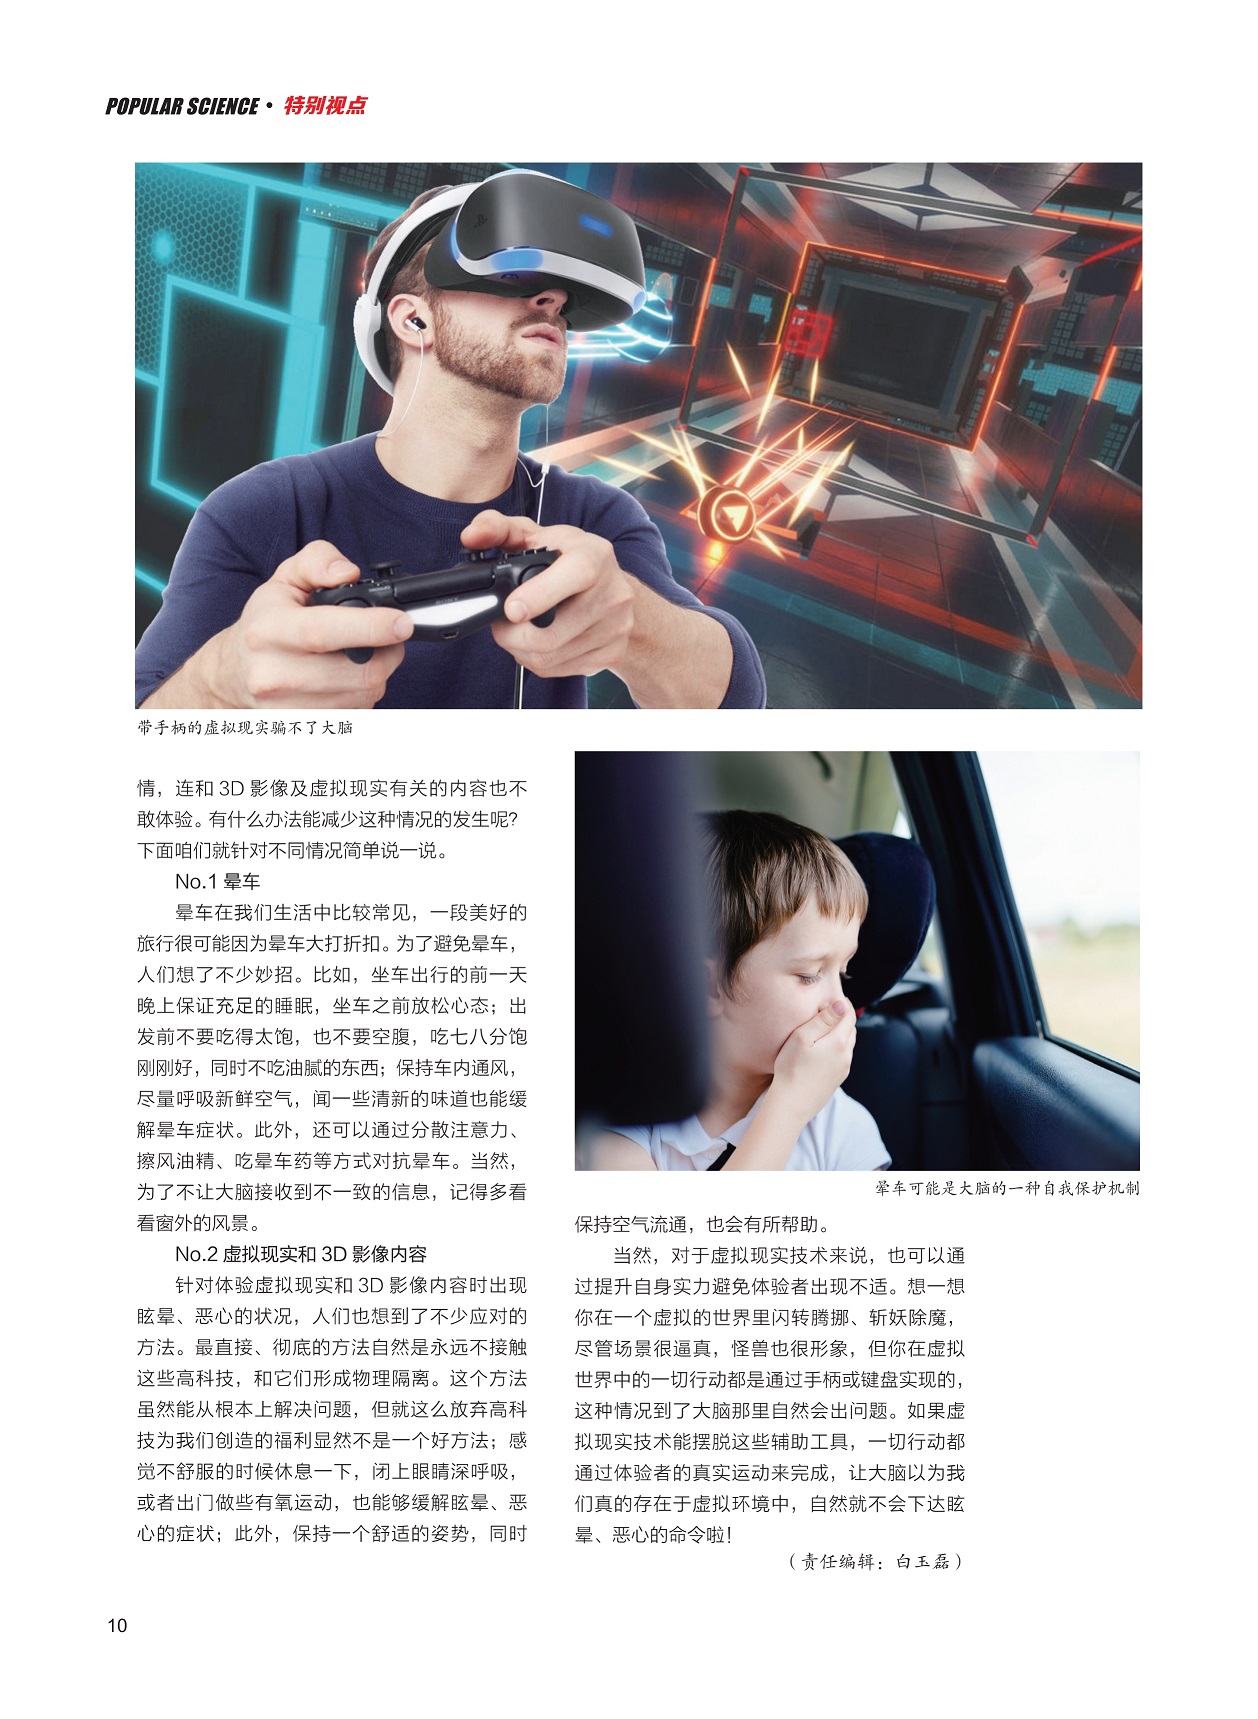 虚拟现实和3D影像,技术摆脱辅助工具